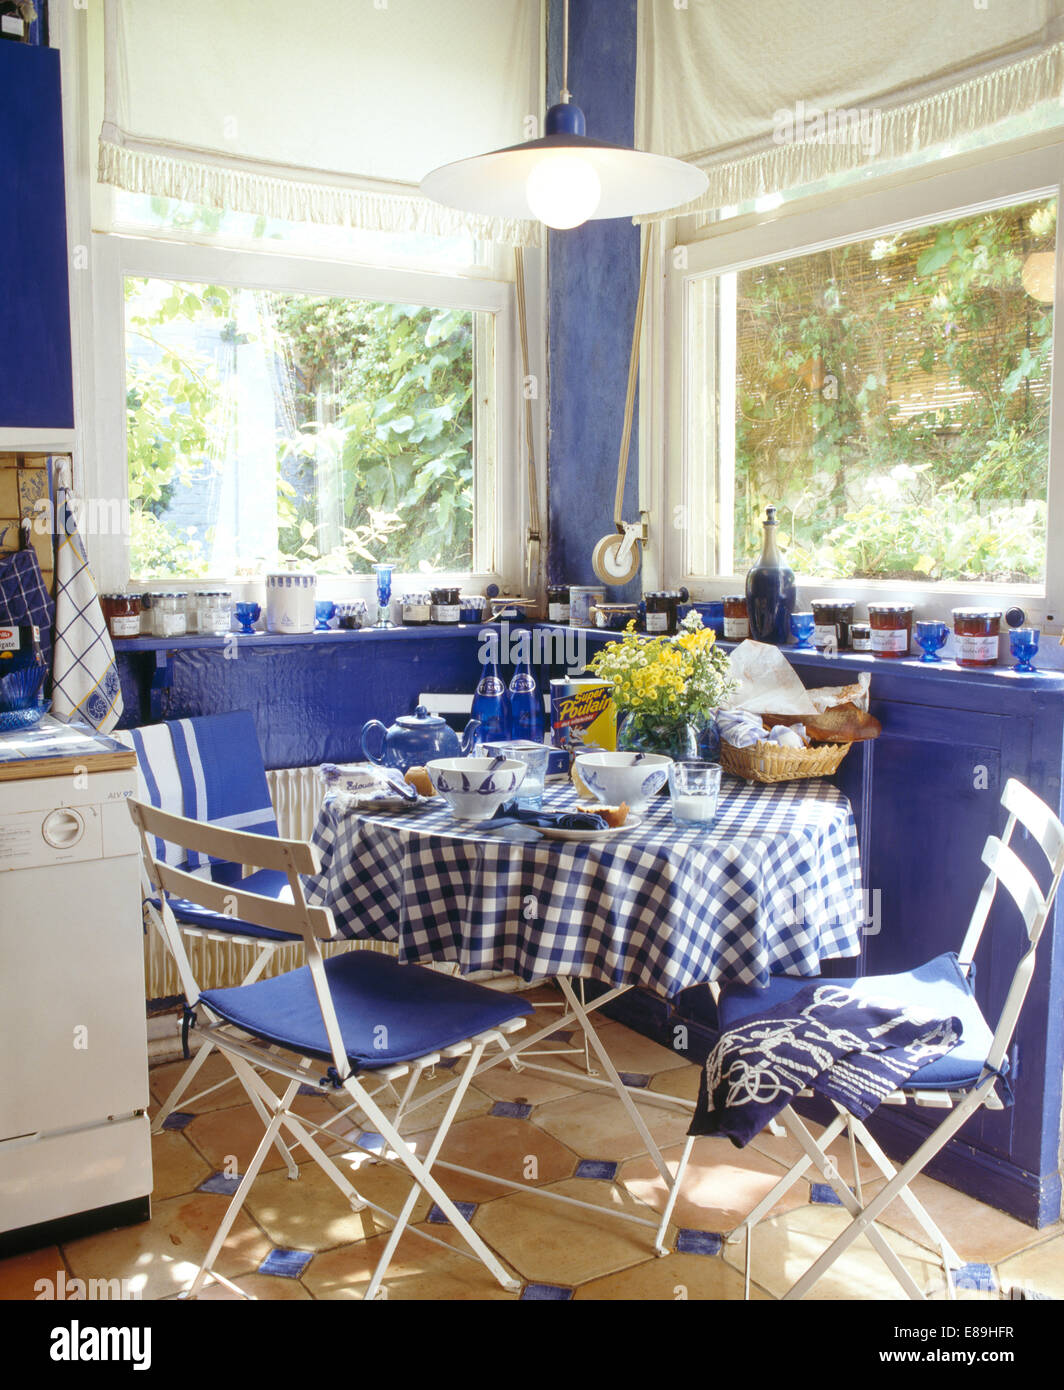 Weiße Klappstühle an kleinen runden Tisch mit blau + weiß aufgegebenes Tuch vor Fenstern mit weißen blind Stockfoto